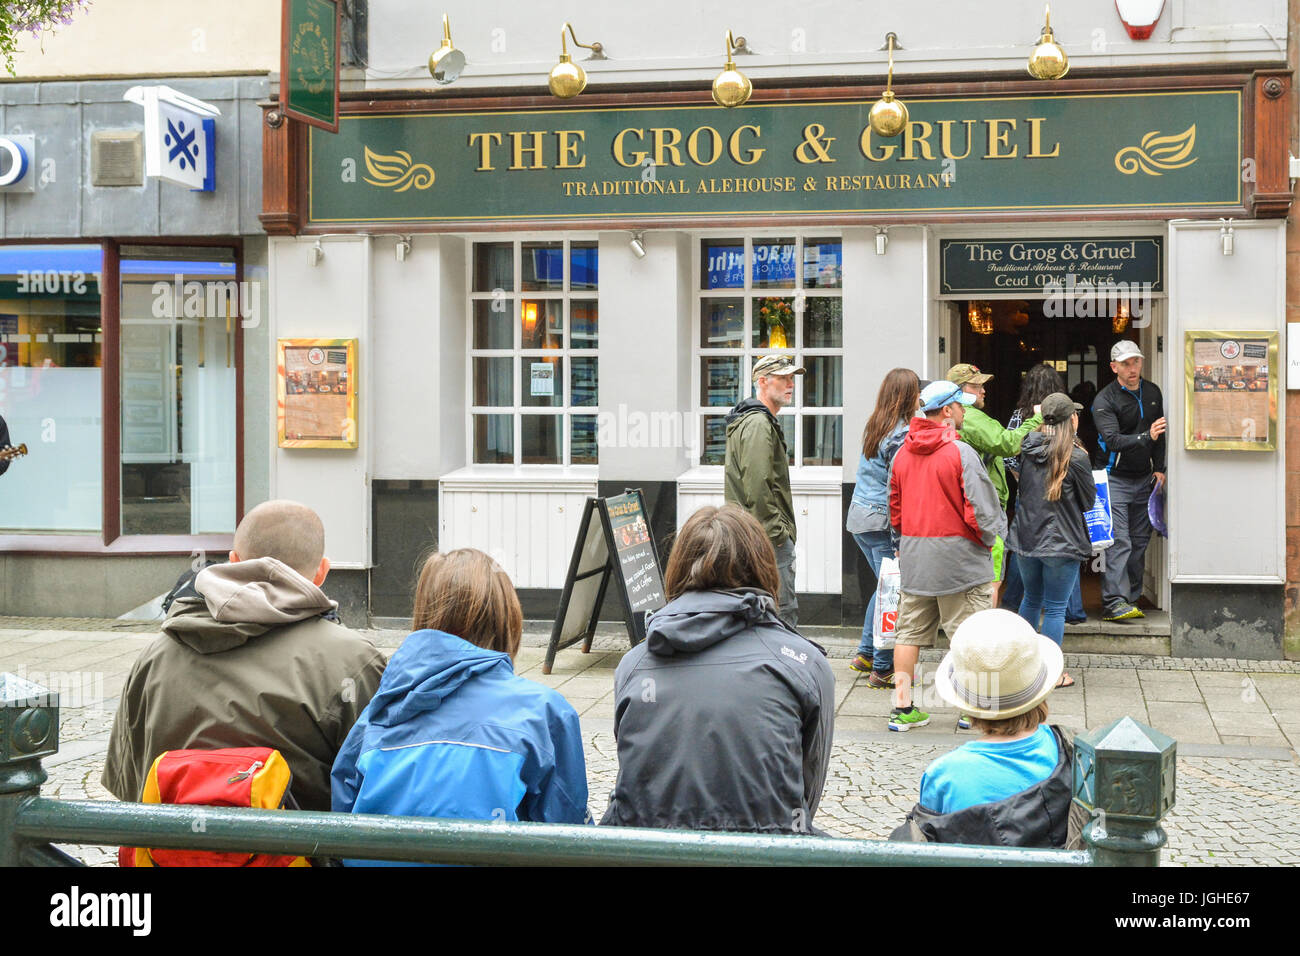 Taverne traditionnelle & Restaurant - Le grog et Gruel - Fort William, Écosse, Royaume-Uni Banque D'Images